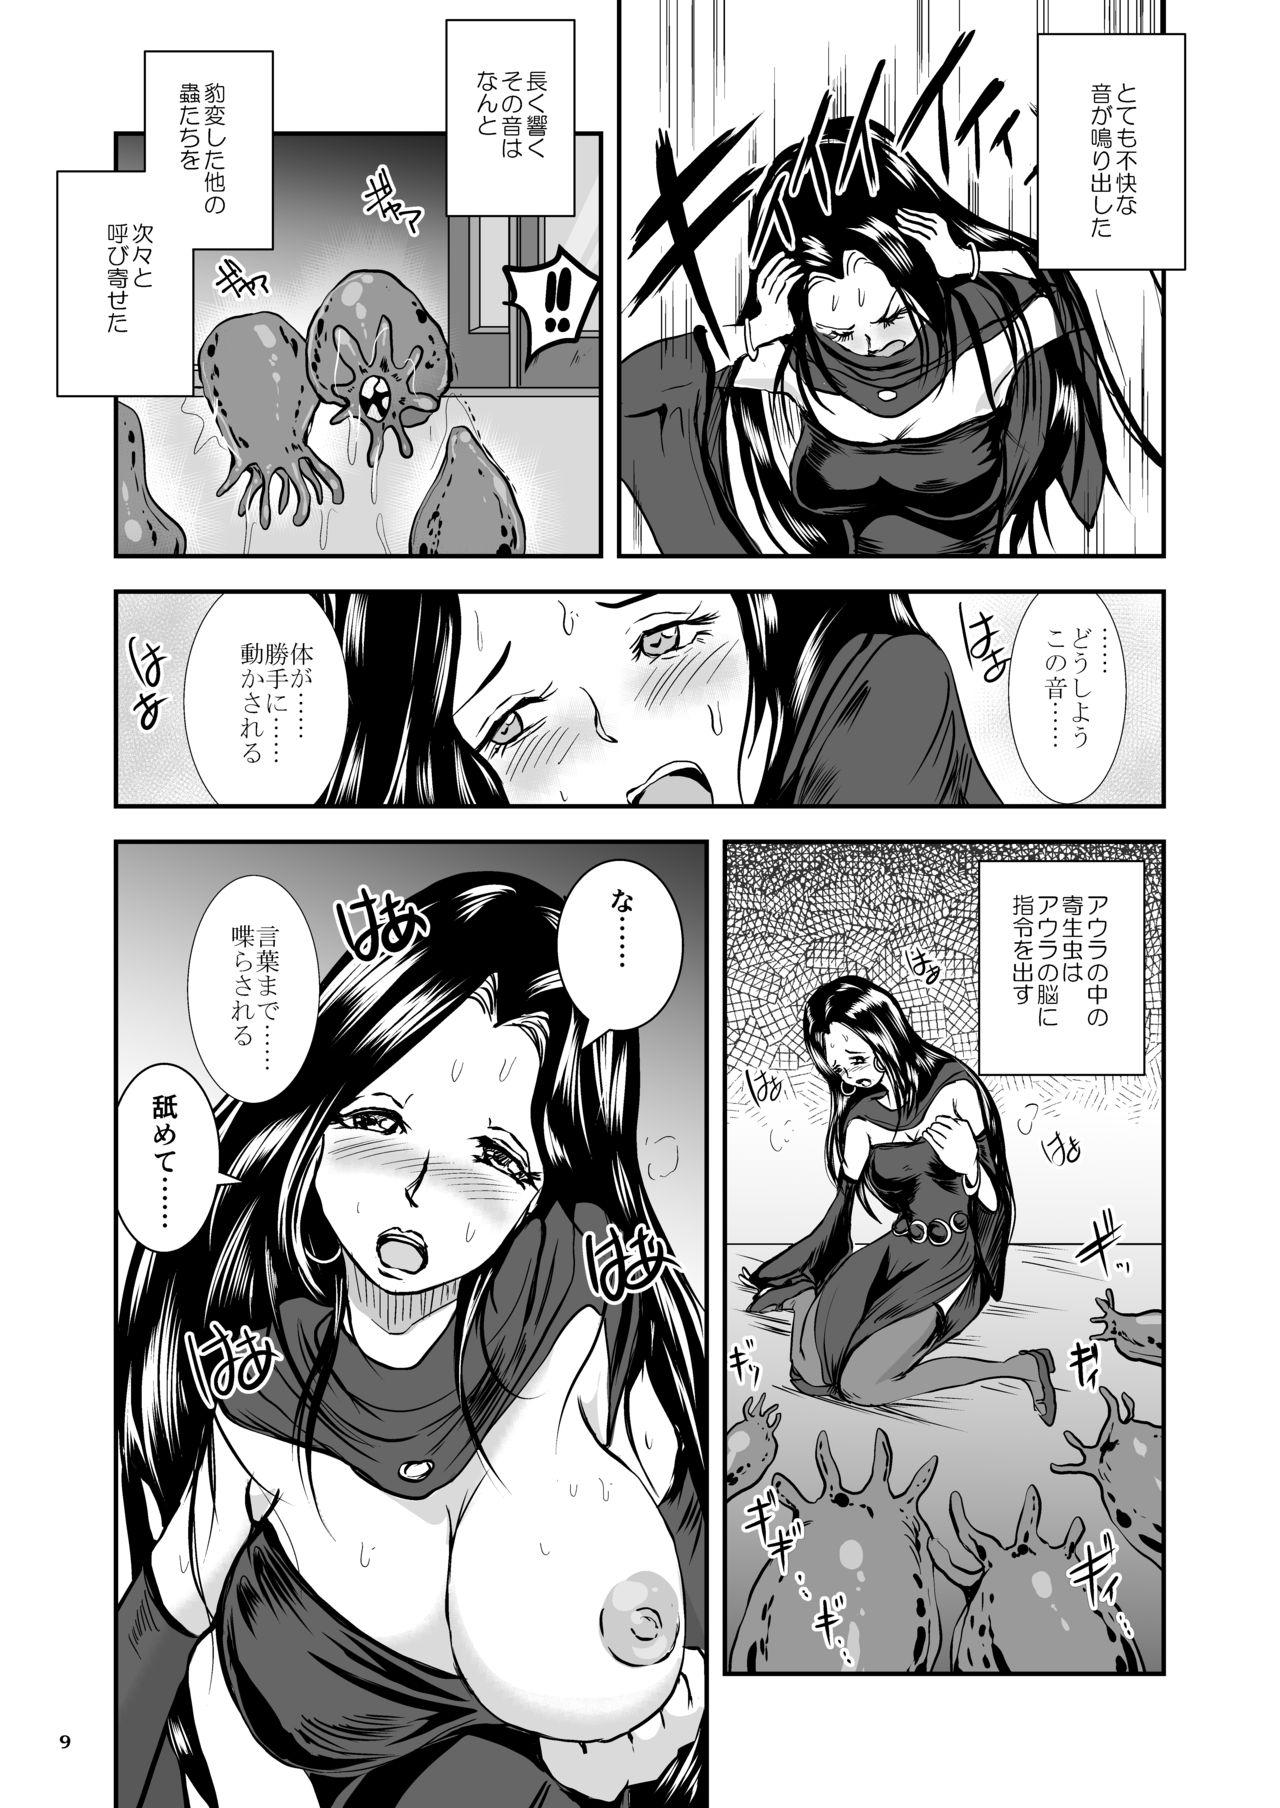 Oonamekuji to Kurokami no Mahoutsukai - Parasitized Giant Slugs V.S. Sorceress of the Black Hair as Aura 8